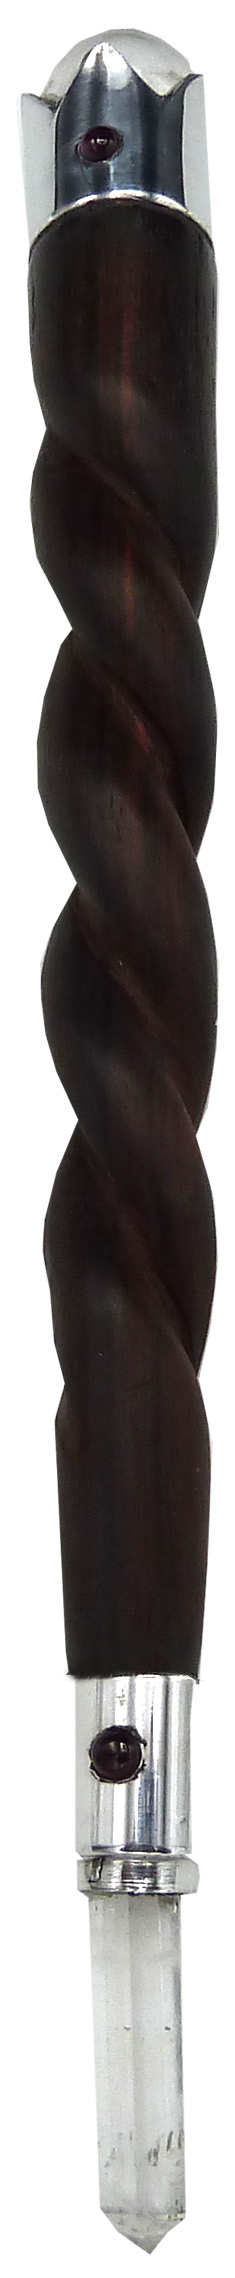 Care bastone in legno di palissandro 17 cm